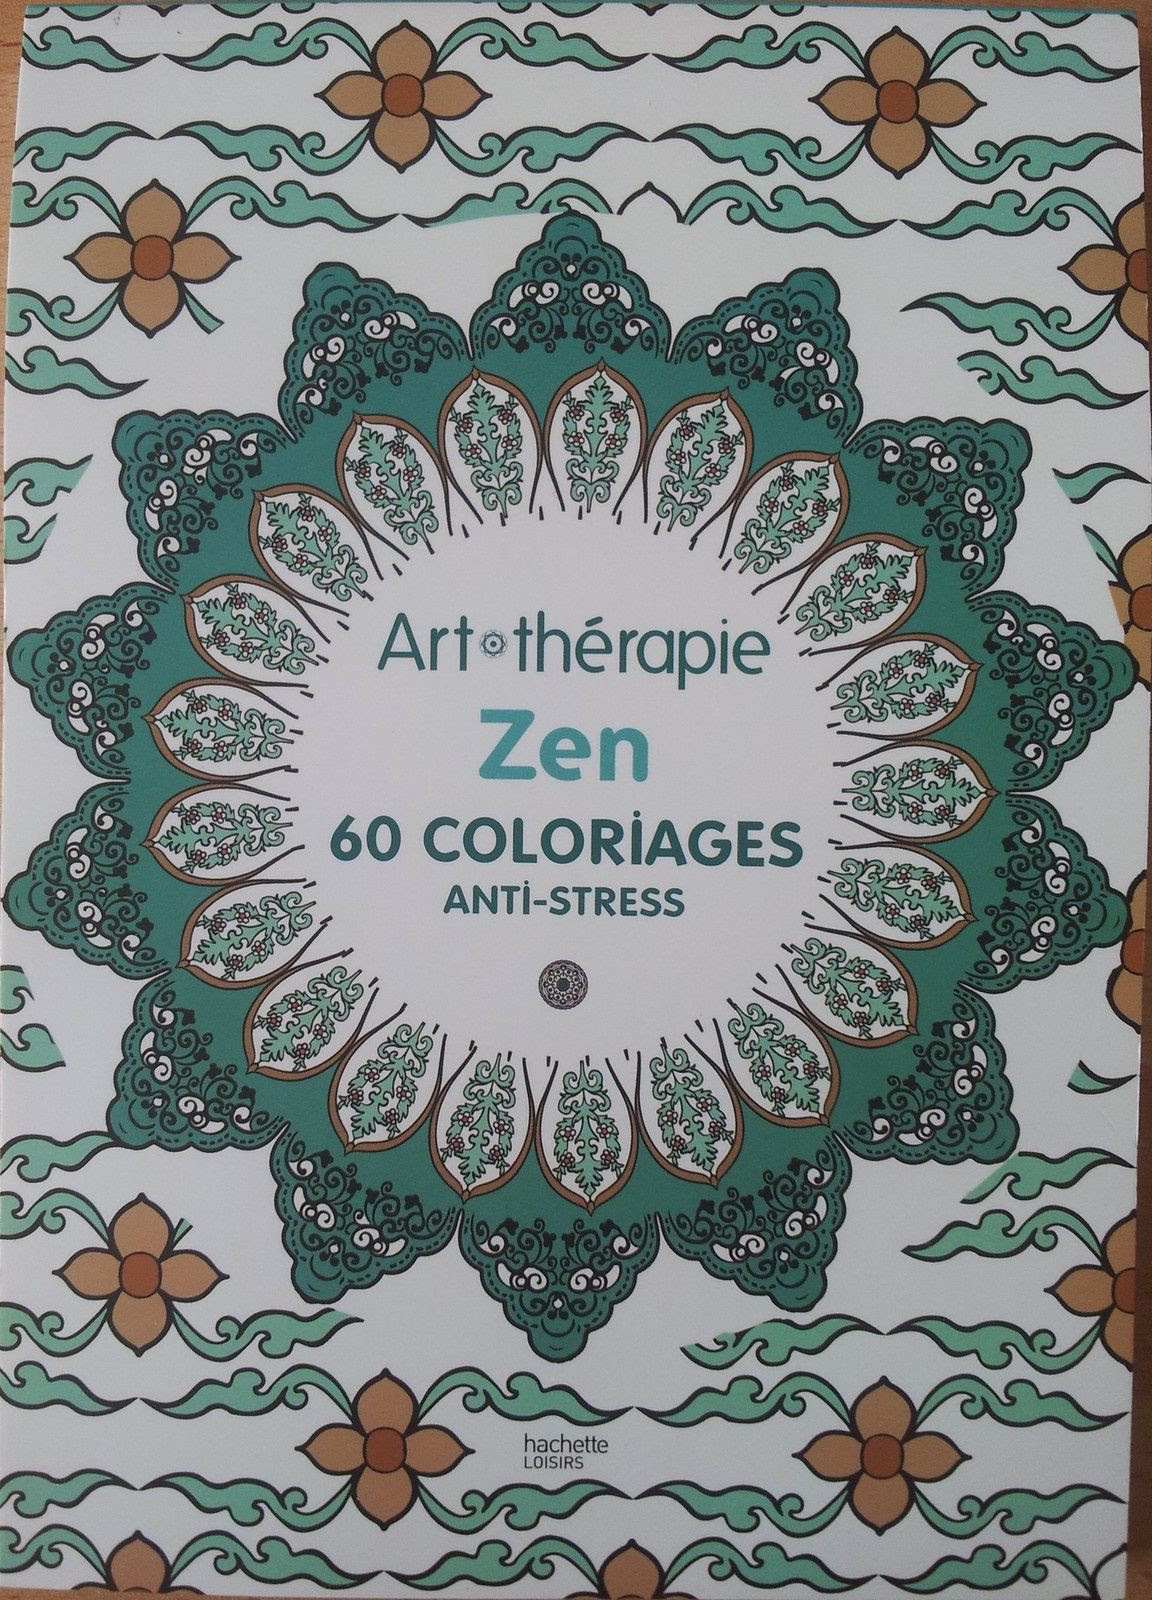 Art thérapie ZEN 60 coloriages anti stress Hachette Loisirs juillet 2014